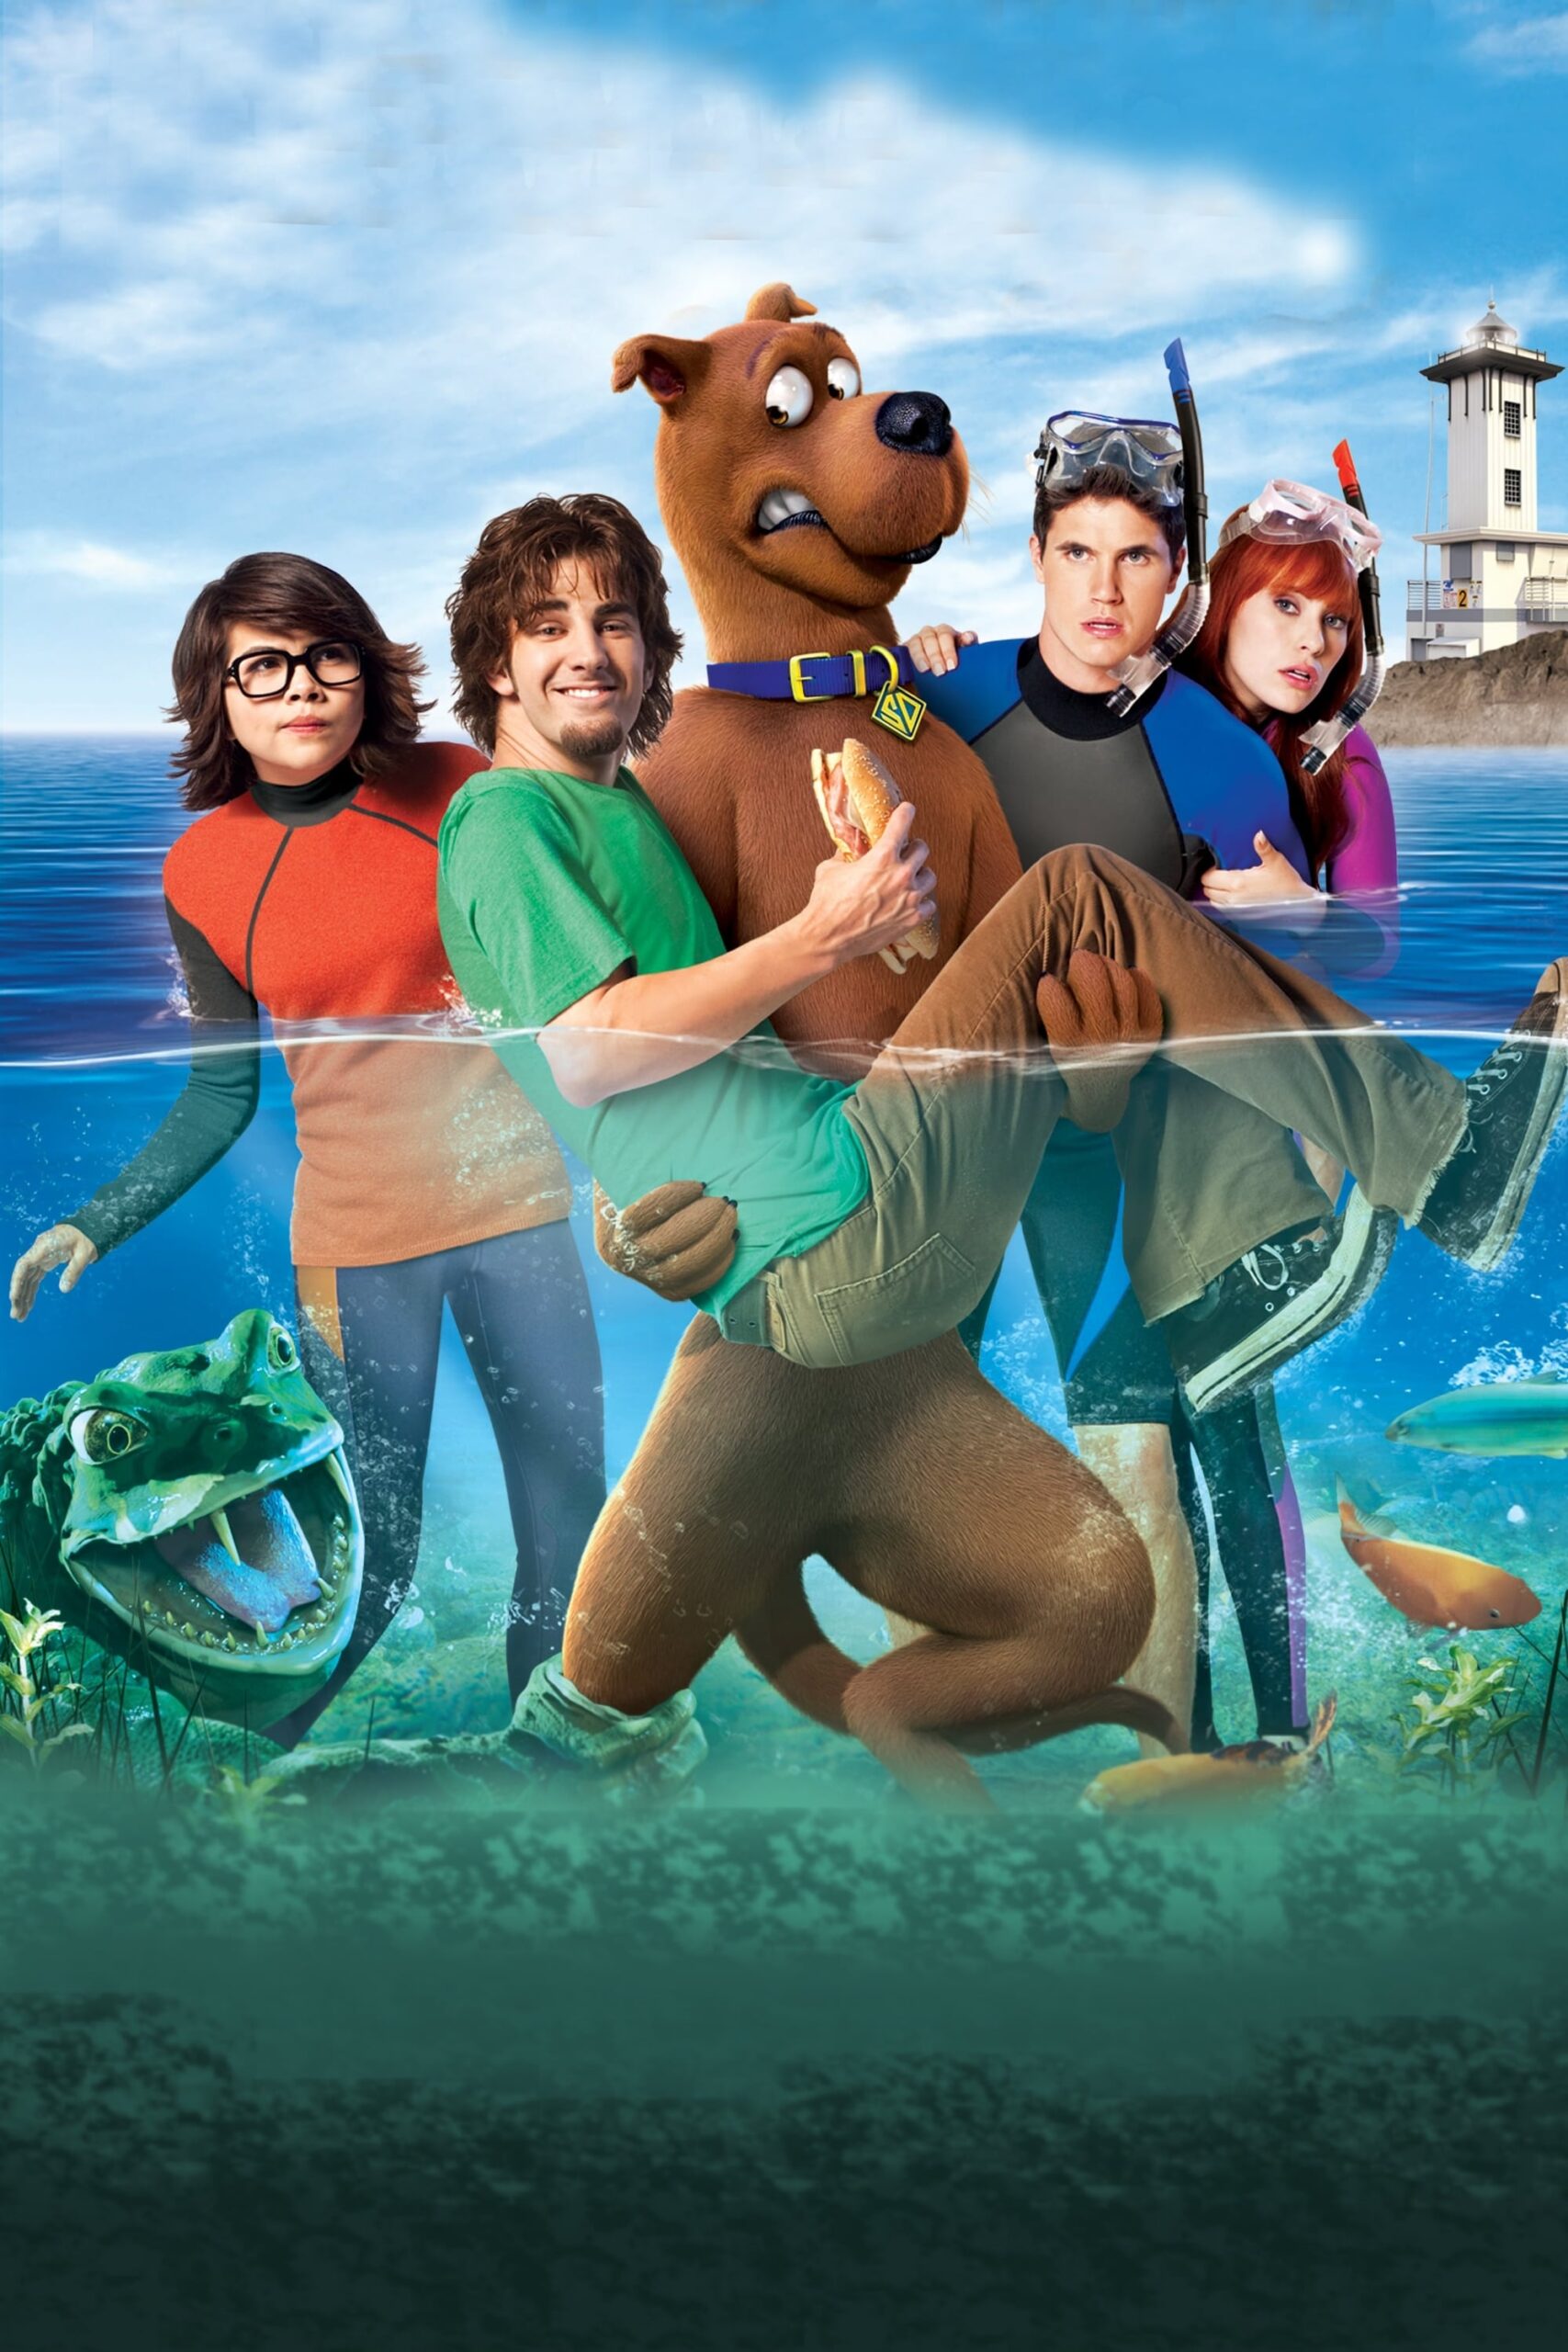 ดูหนังออนไลน์ฟรี Scooby-Doo! Curse of the Lake Monster สคูบี้ดู ตอนคำสาปอสูรทะเลสาบ (2010) เต็มเรื่อง